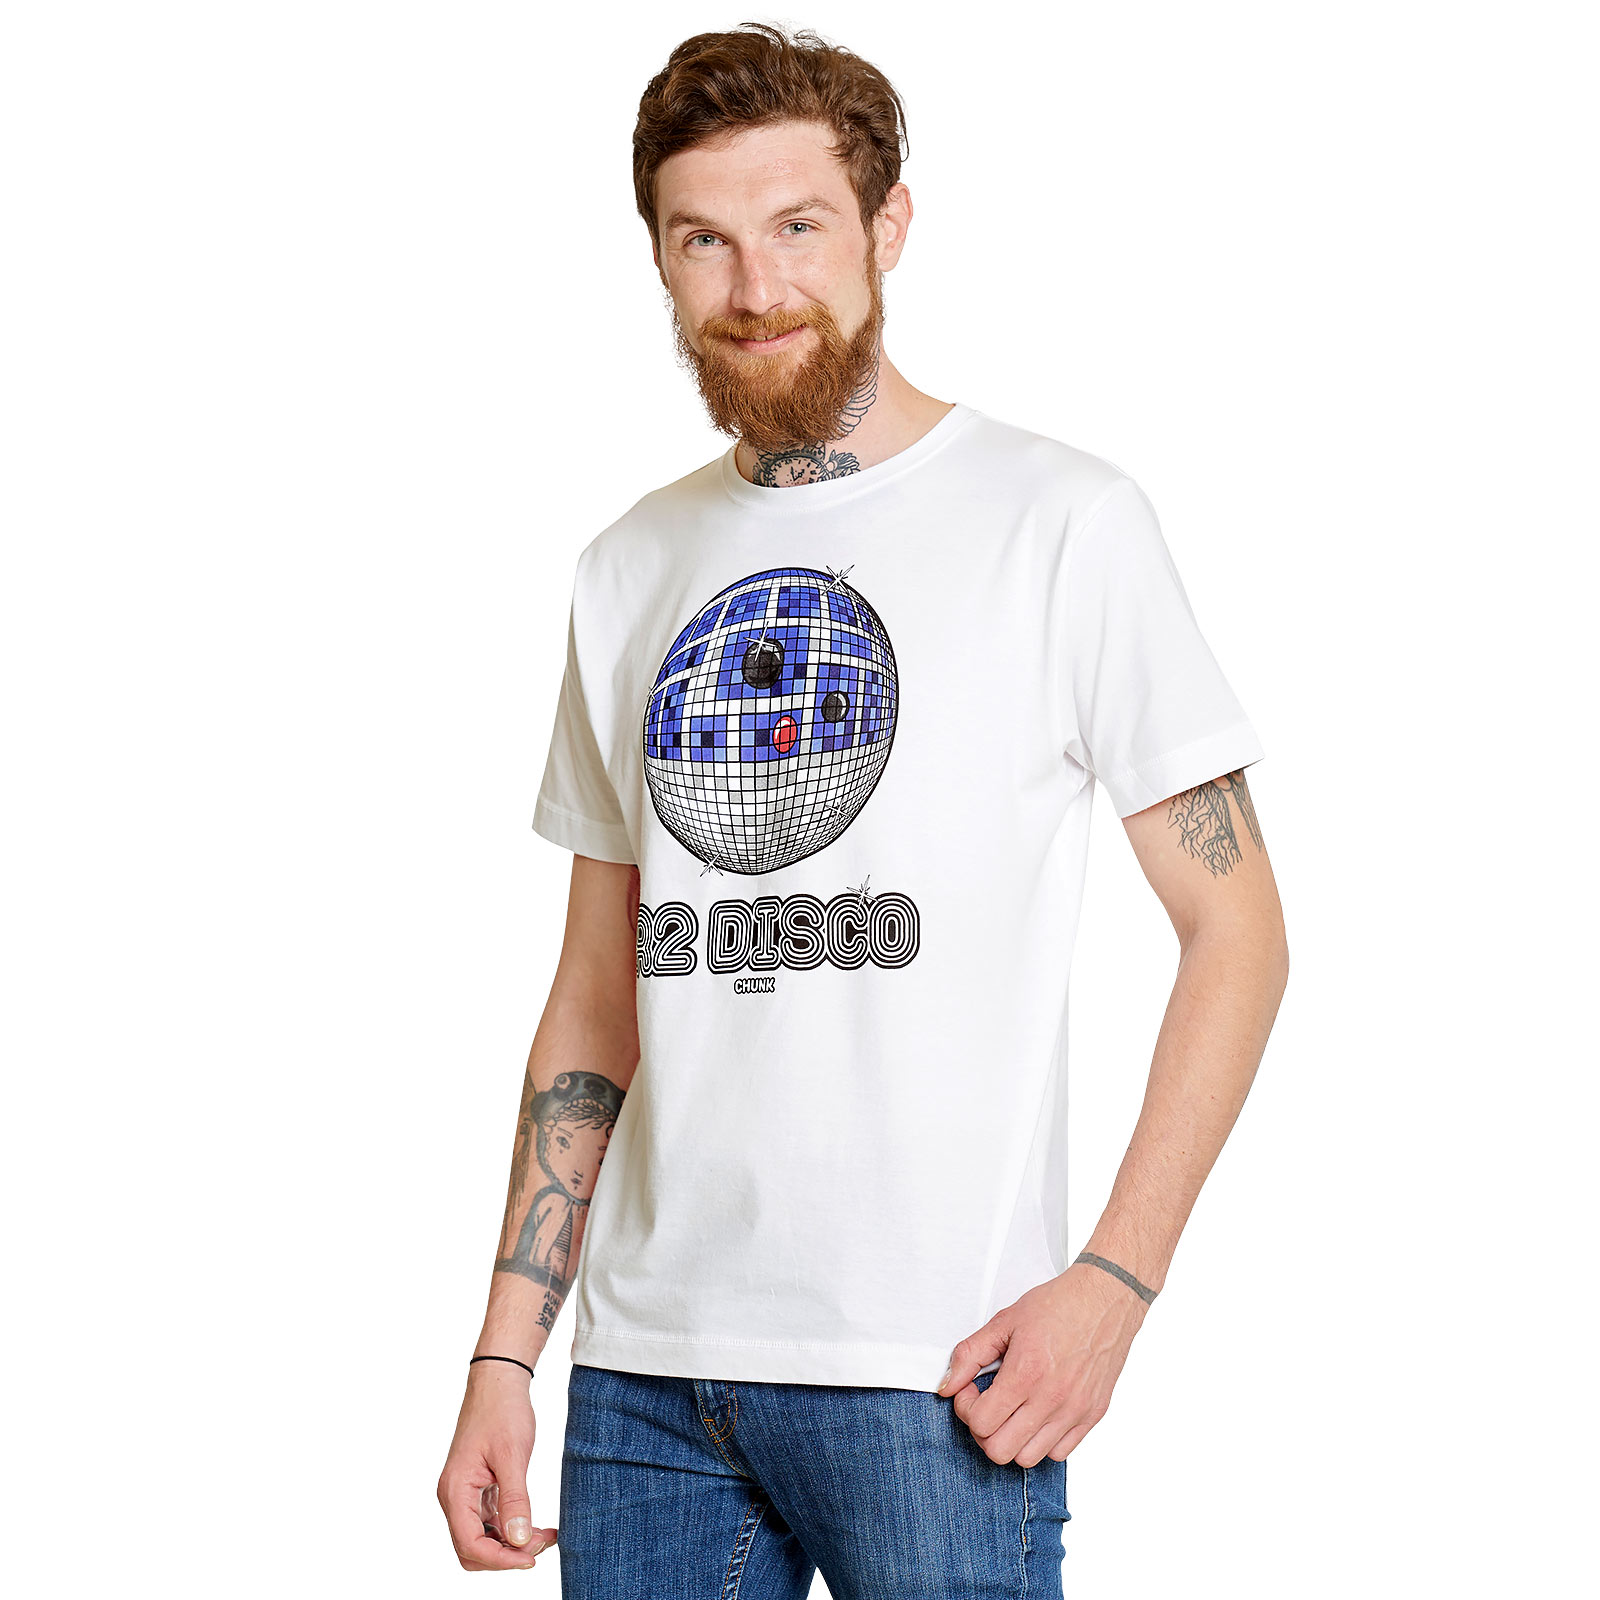 Droid Disco T-Shirt für Star Wars Fans weiß